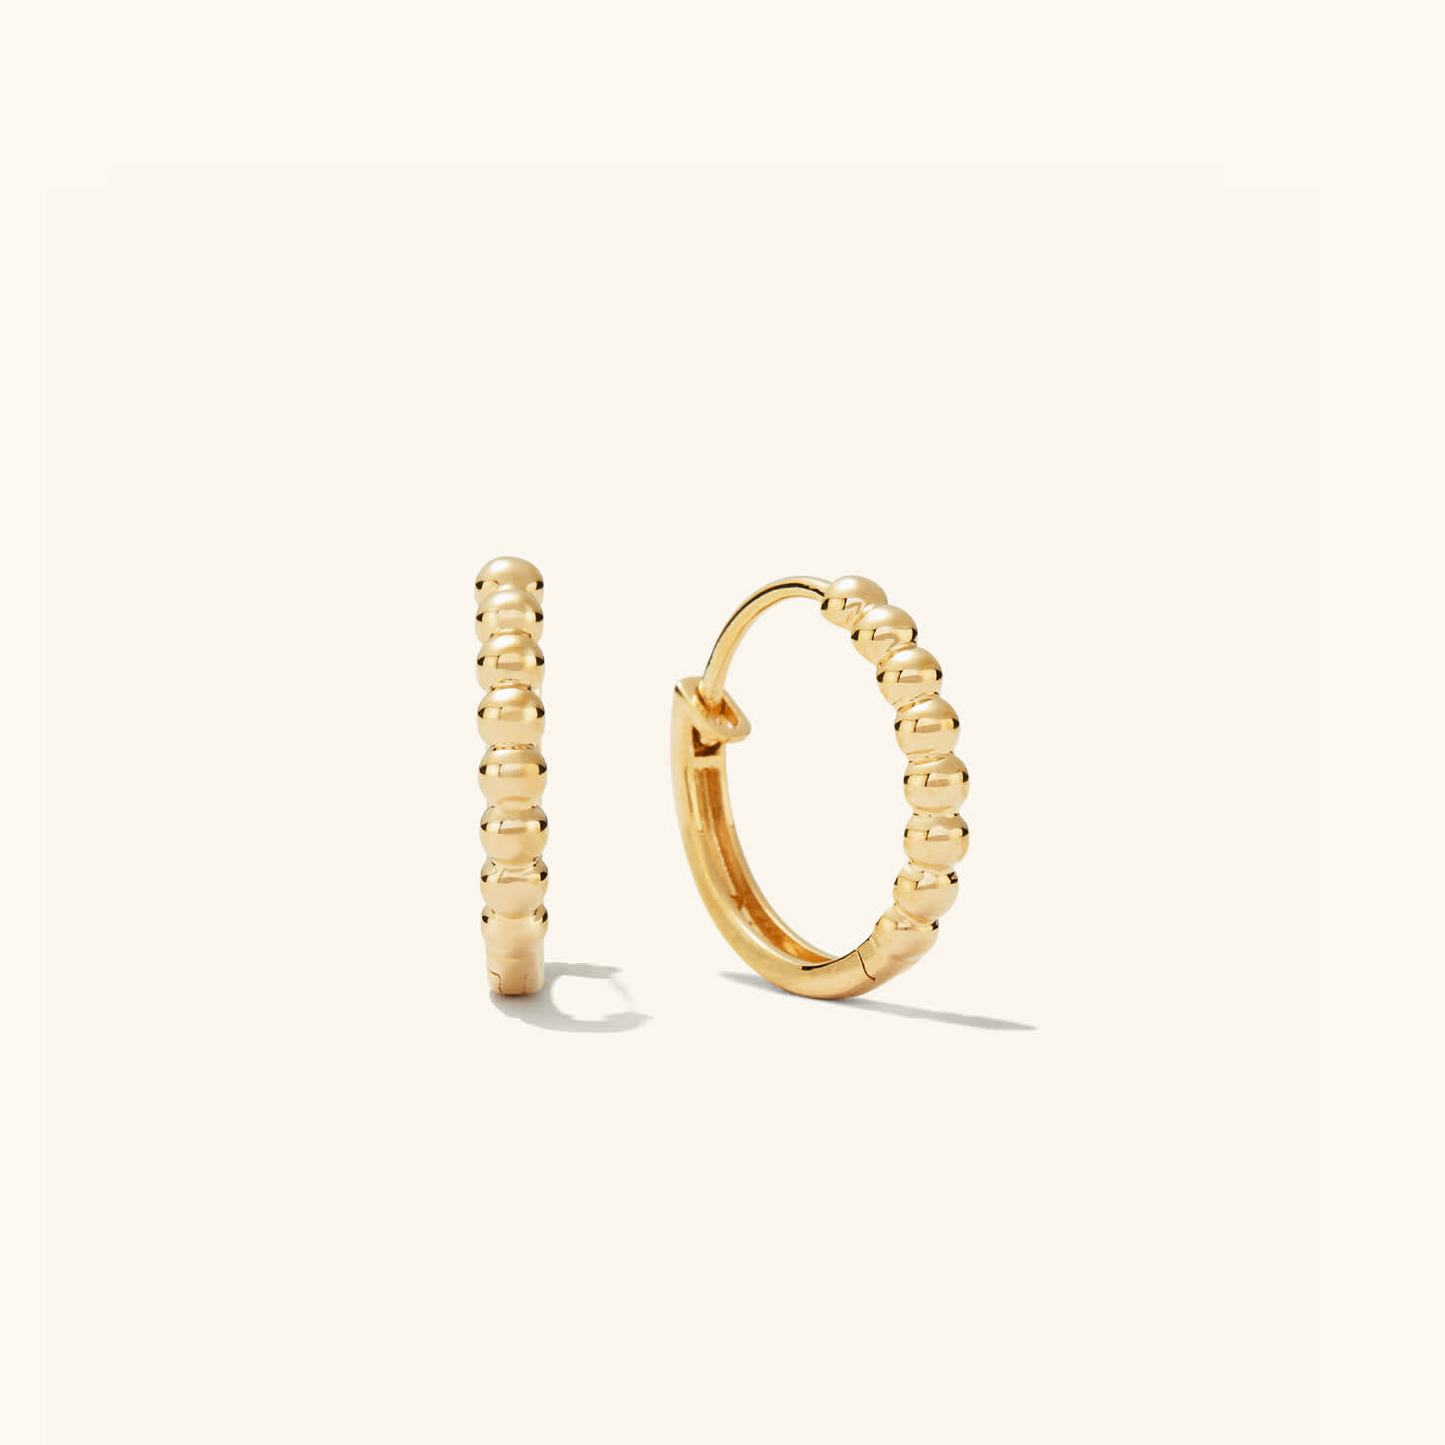 Beaded Small 14K Gold Daily Wear Hoop Earrings